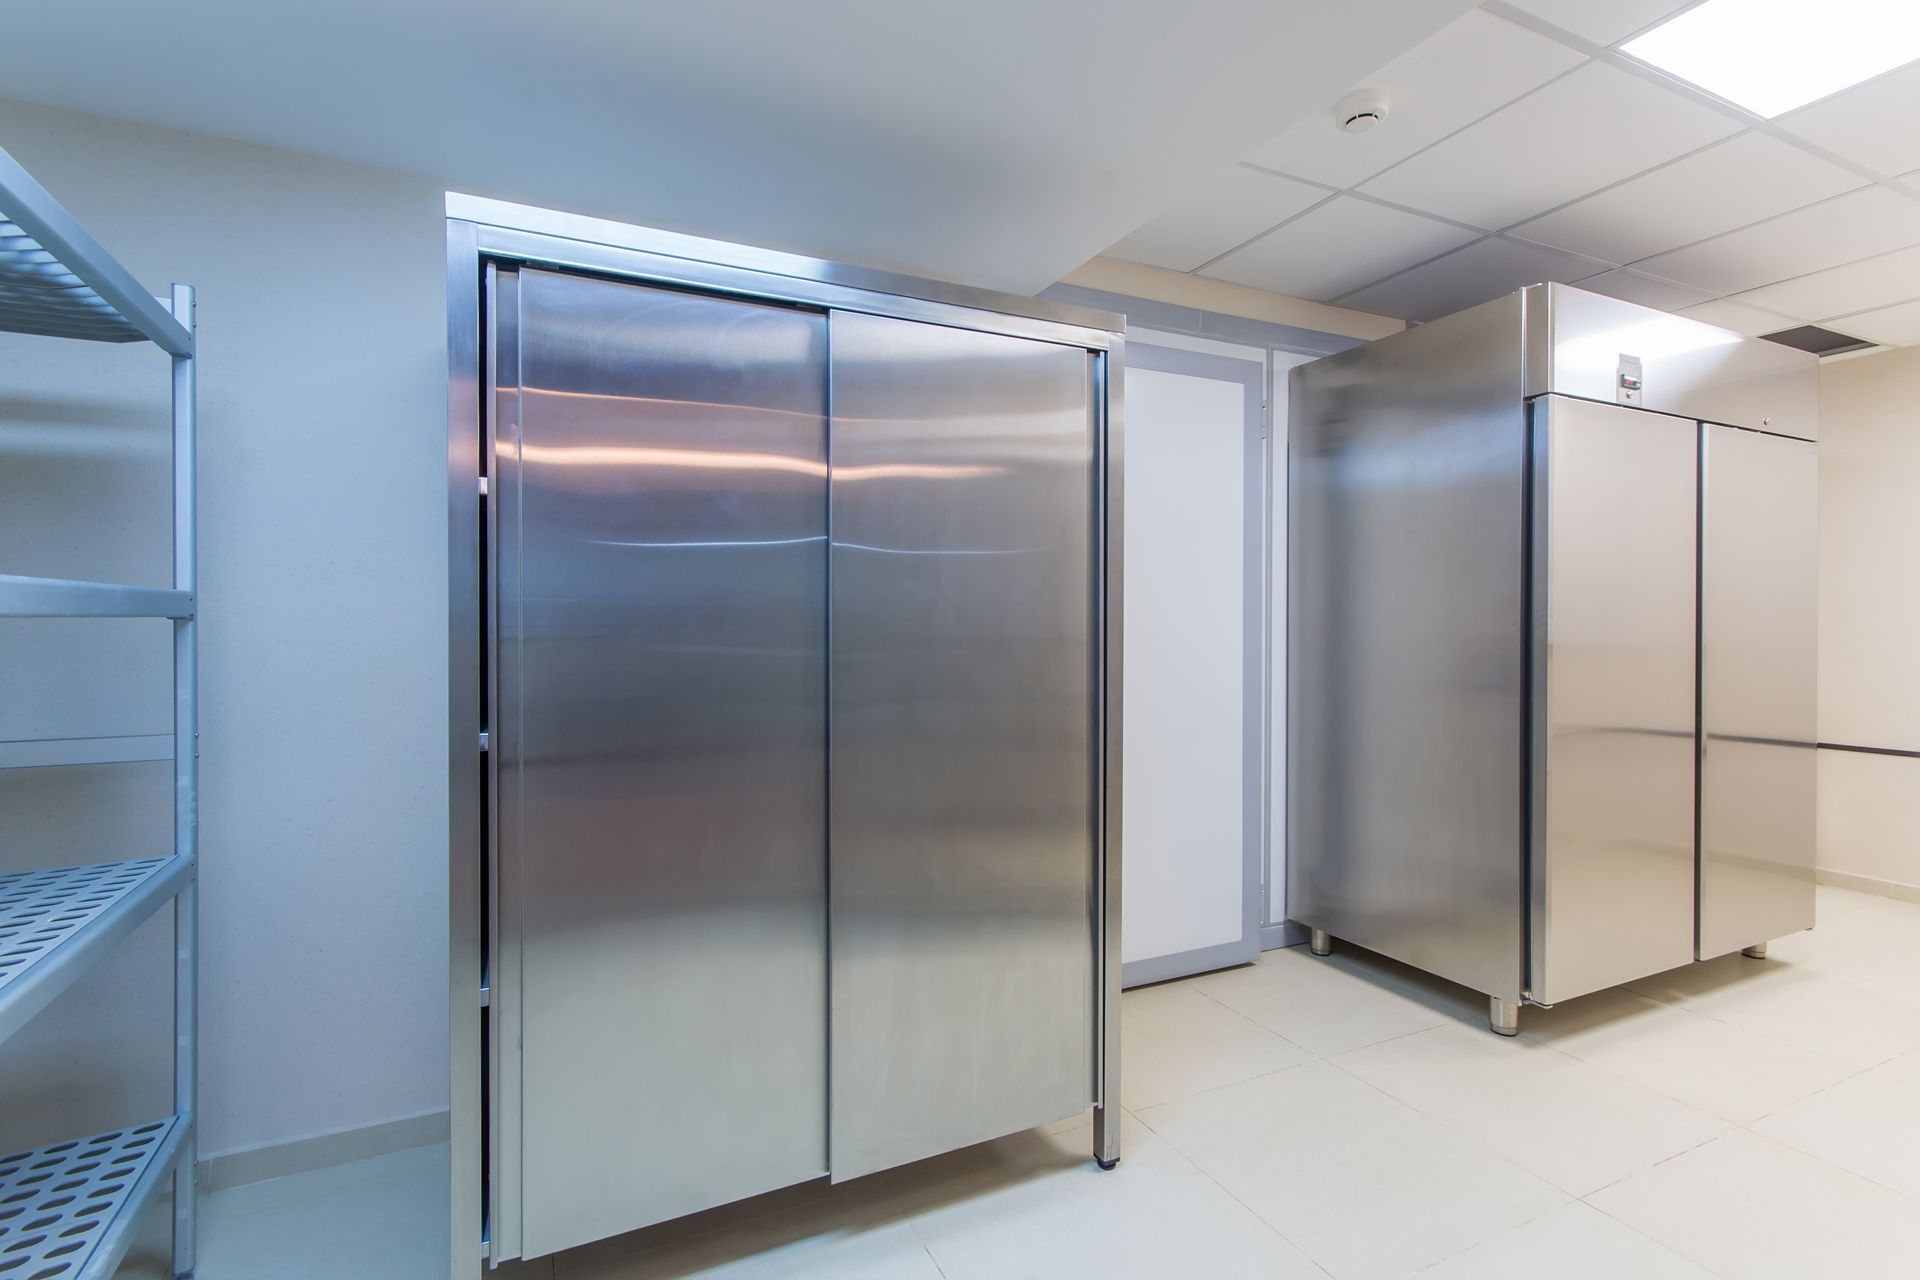 Deux frigos installés dans une cuisine industrielle